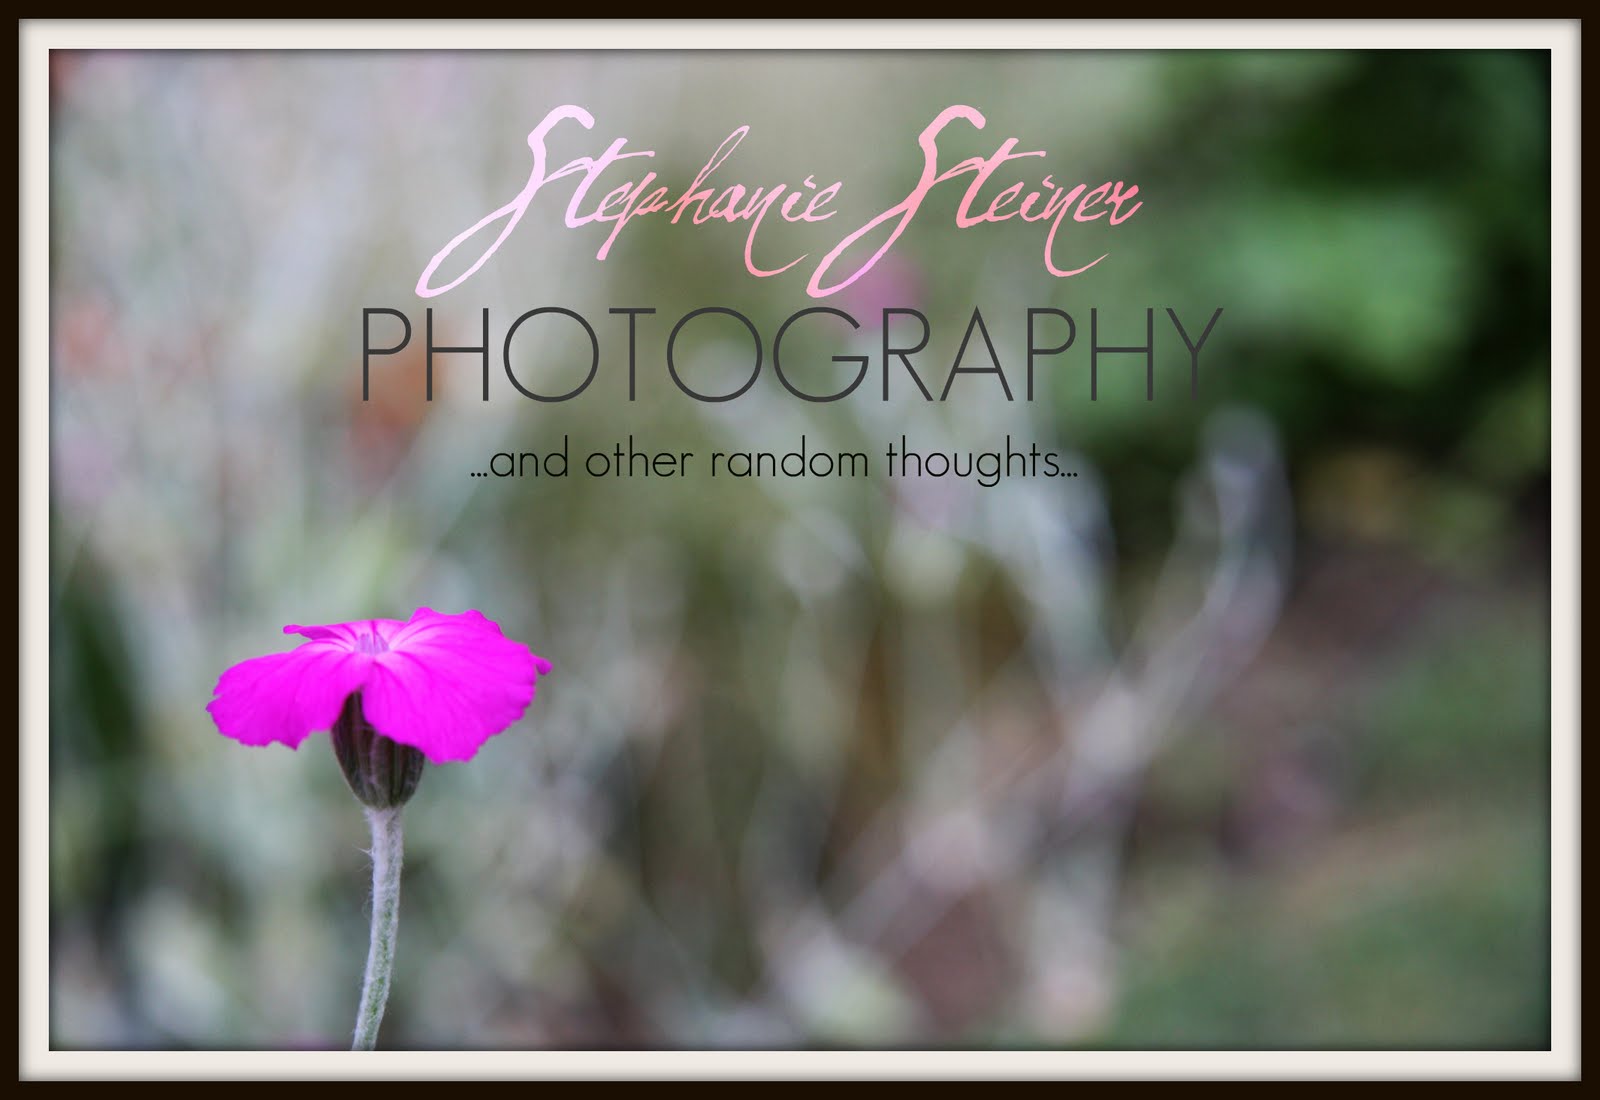 Stephanie Steiner Photography